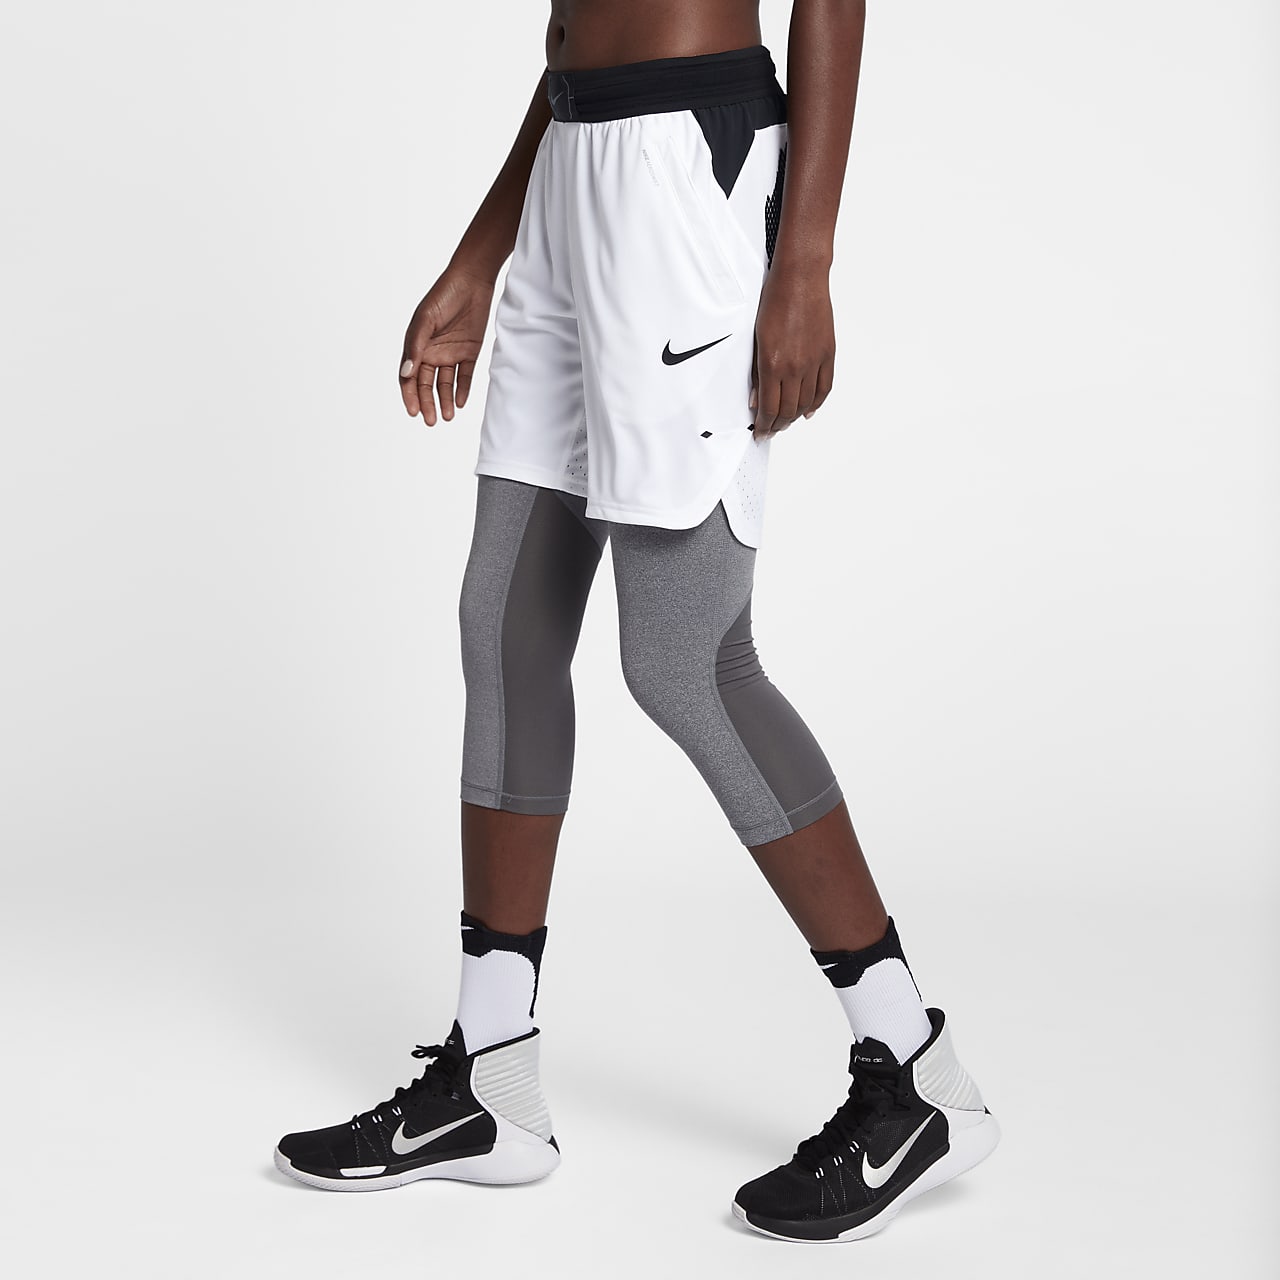 Nike Women's Basketball Shorts. Nike LU